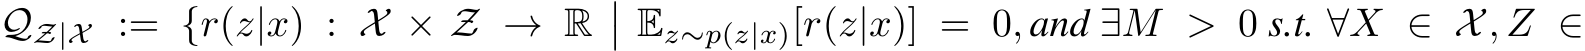 QZ|X := {r(z|x) : X × Z → R�� Ez∼p(z|x)[r(z|x)] = 0, and ∃M > 0 s.t. ∀X ∈ X, Z ∈